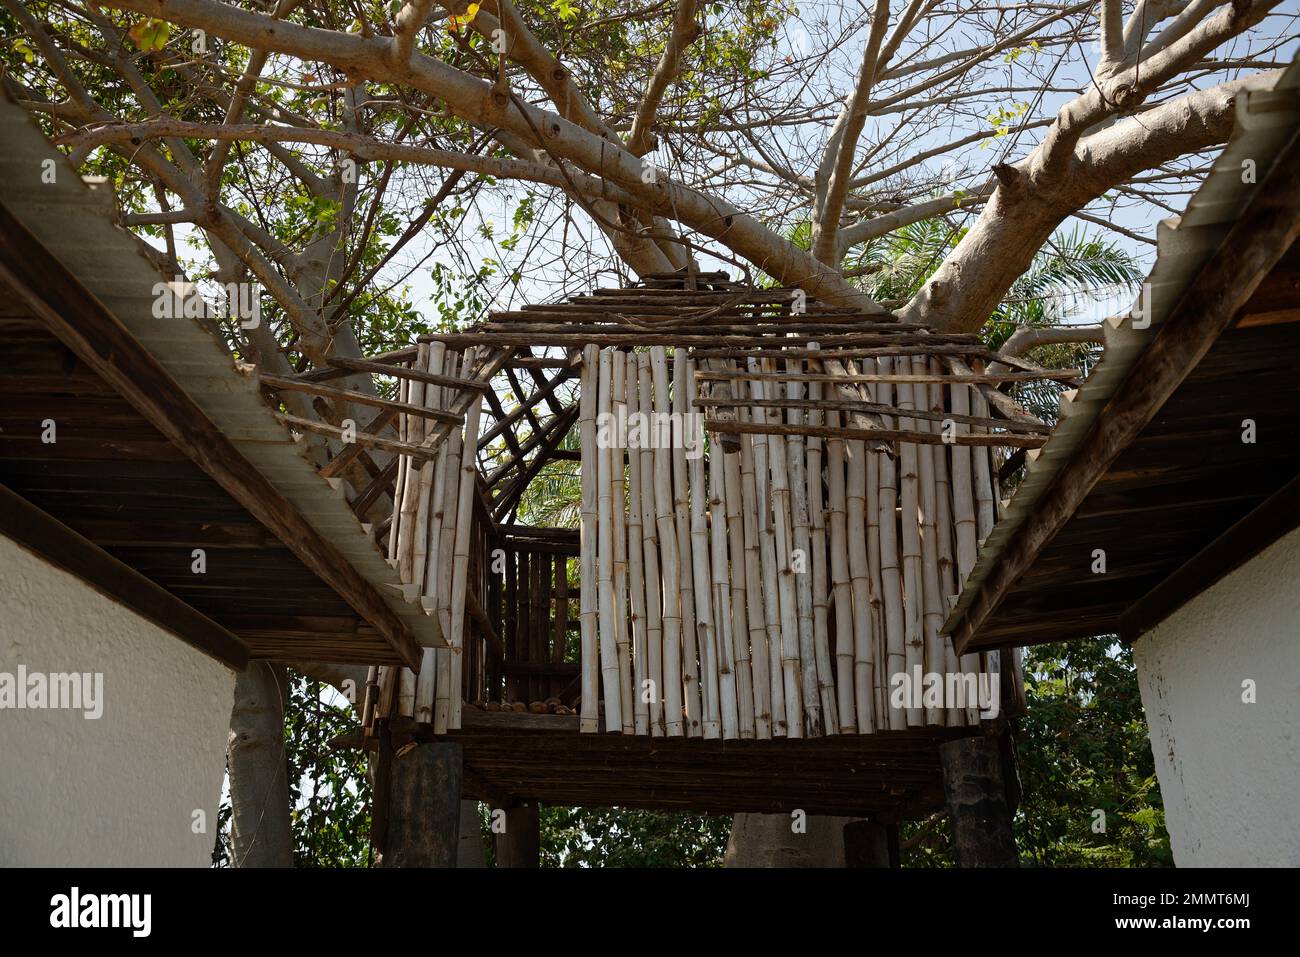 Aussichtsplattform oder Versteck in einem Baobab-Baum in Gambia, Westafrika. Geeignet zur Vogelbeobachtung. Stockfoto